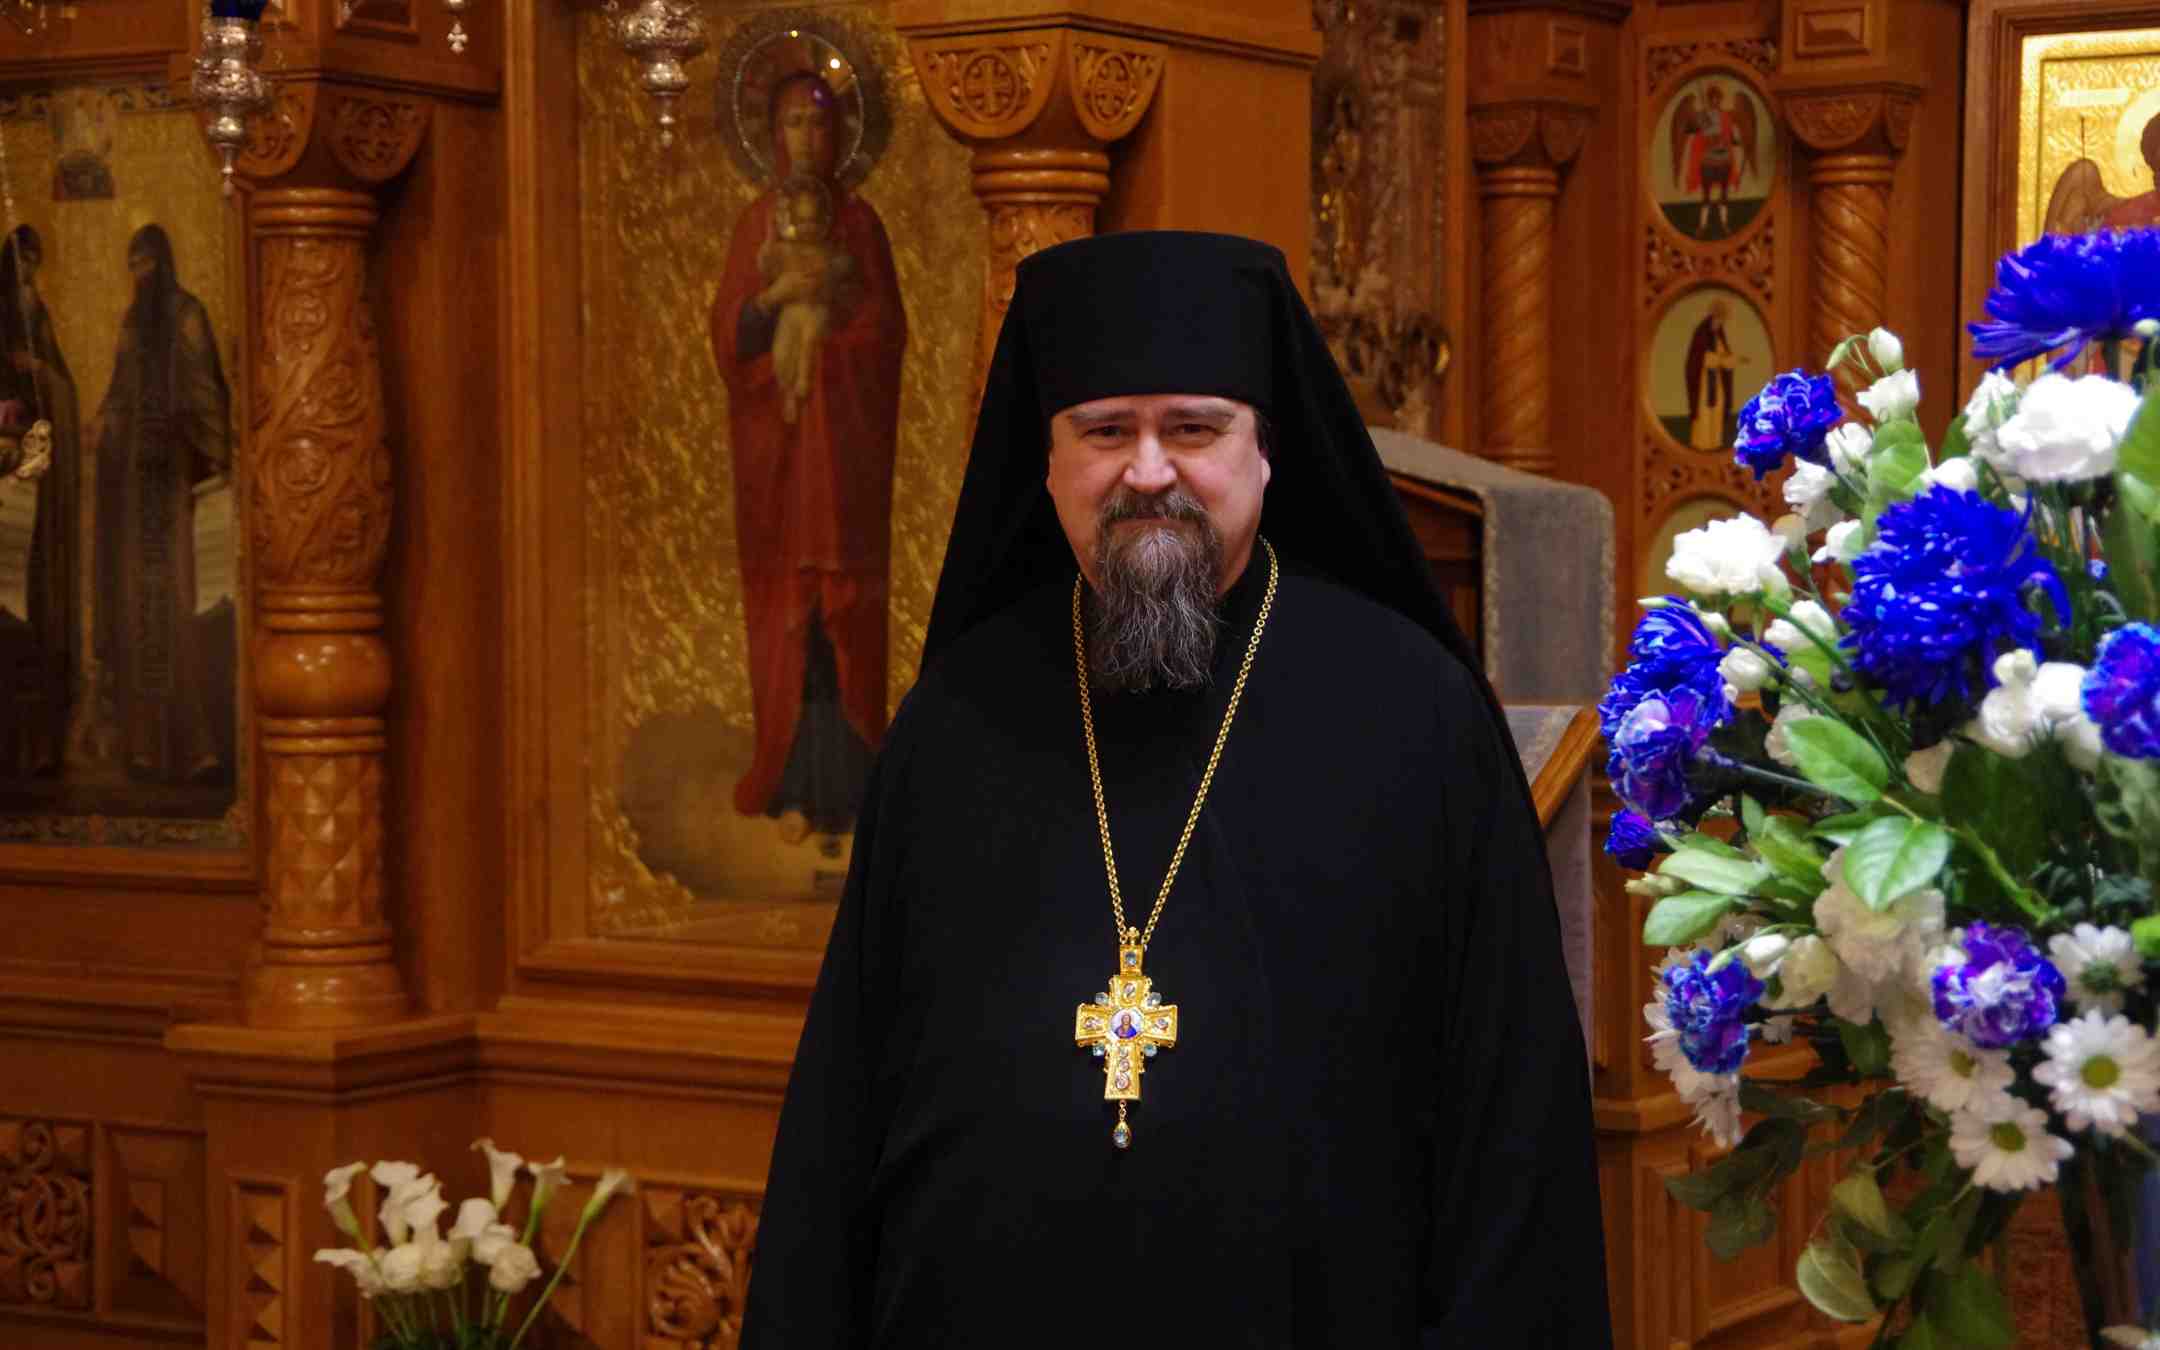 Arkkimandriitta ja Valamon luostarin johtaja Sergei Valamon luostarin ikonostaasin edessä